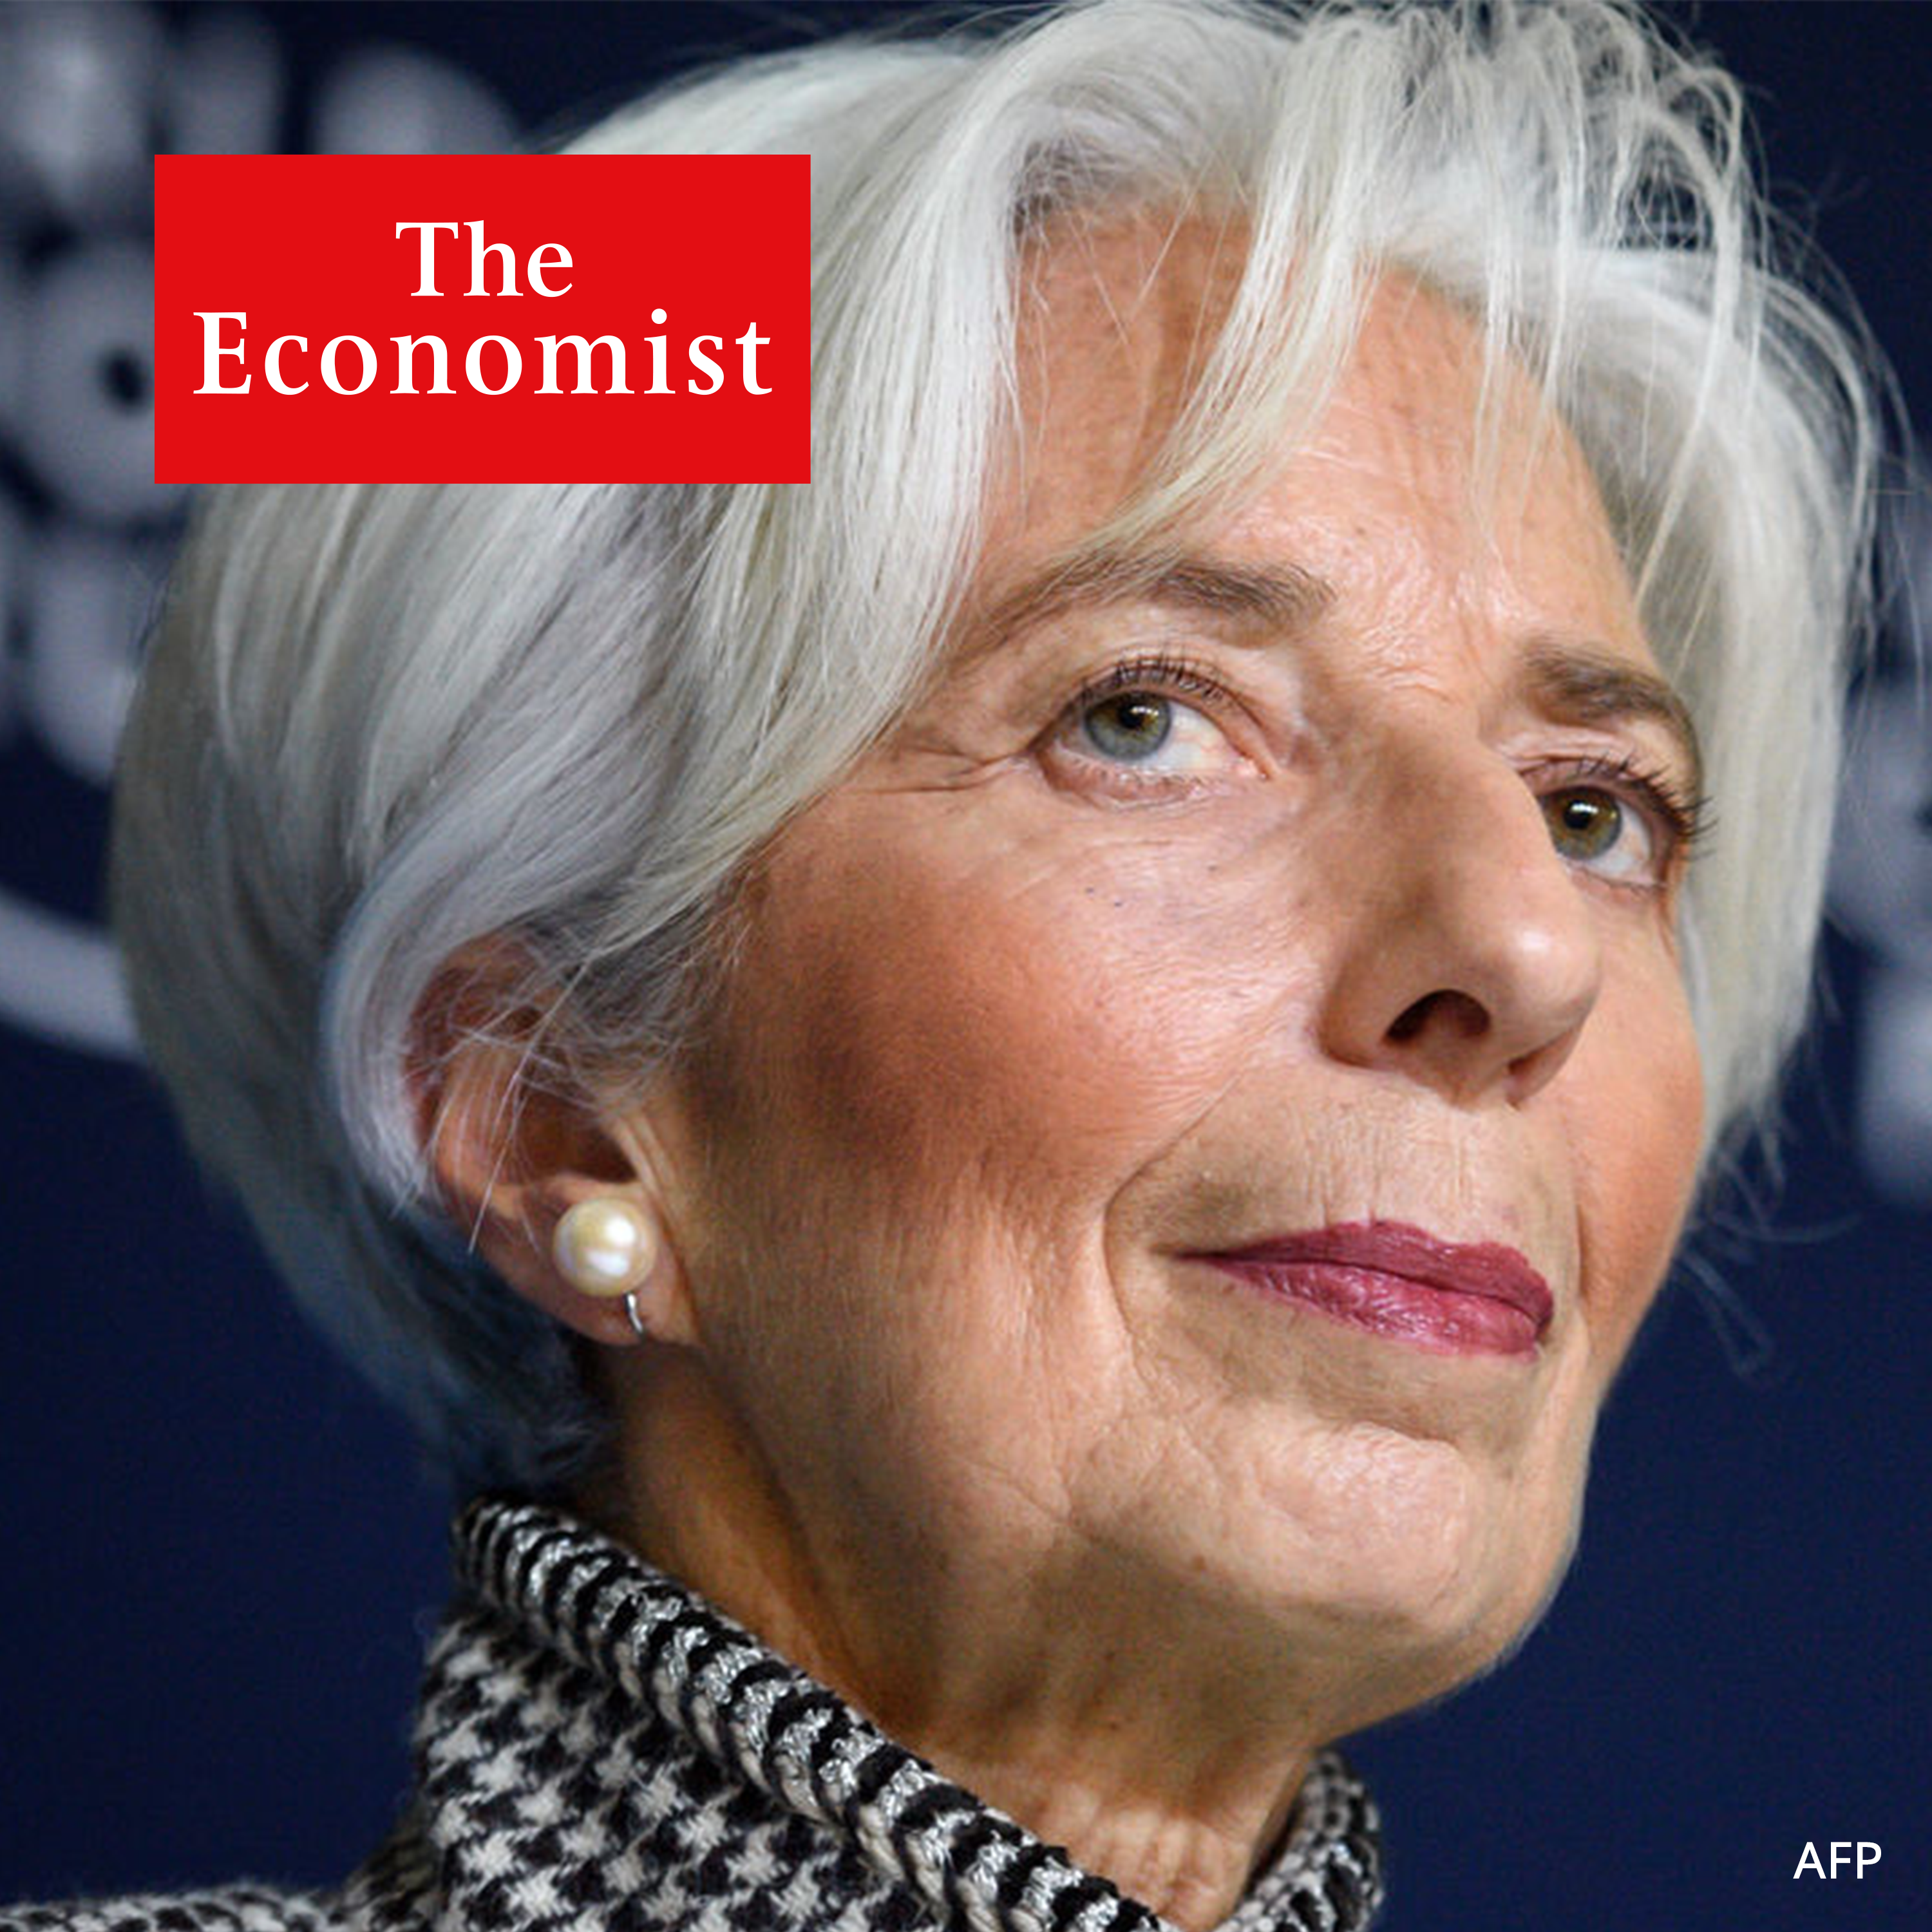 The Economist Podcasts